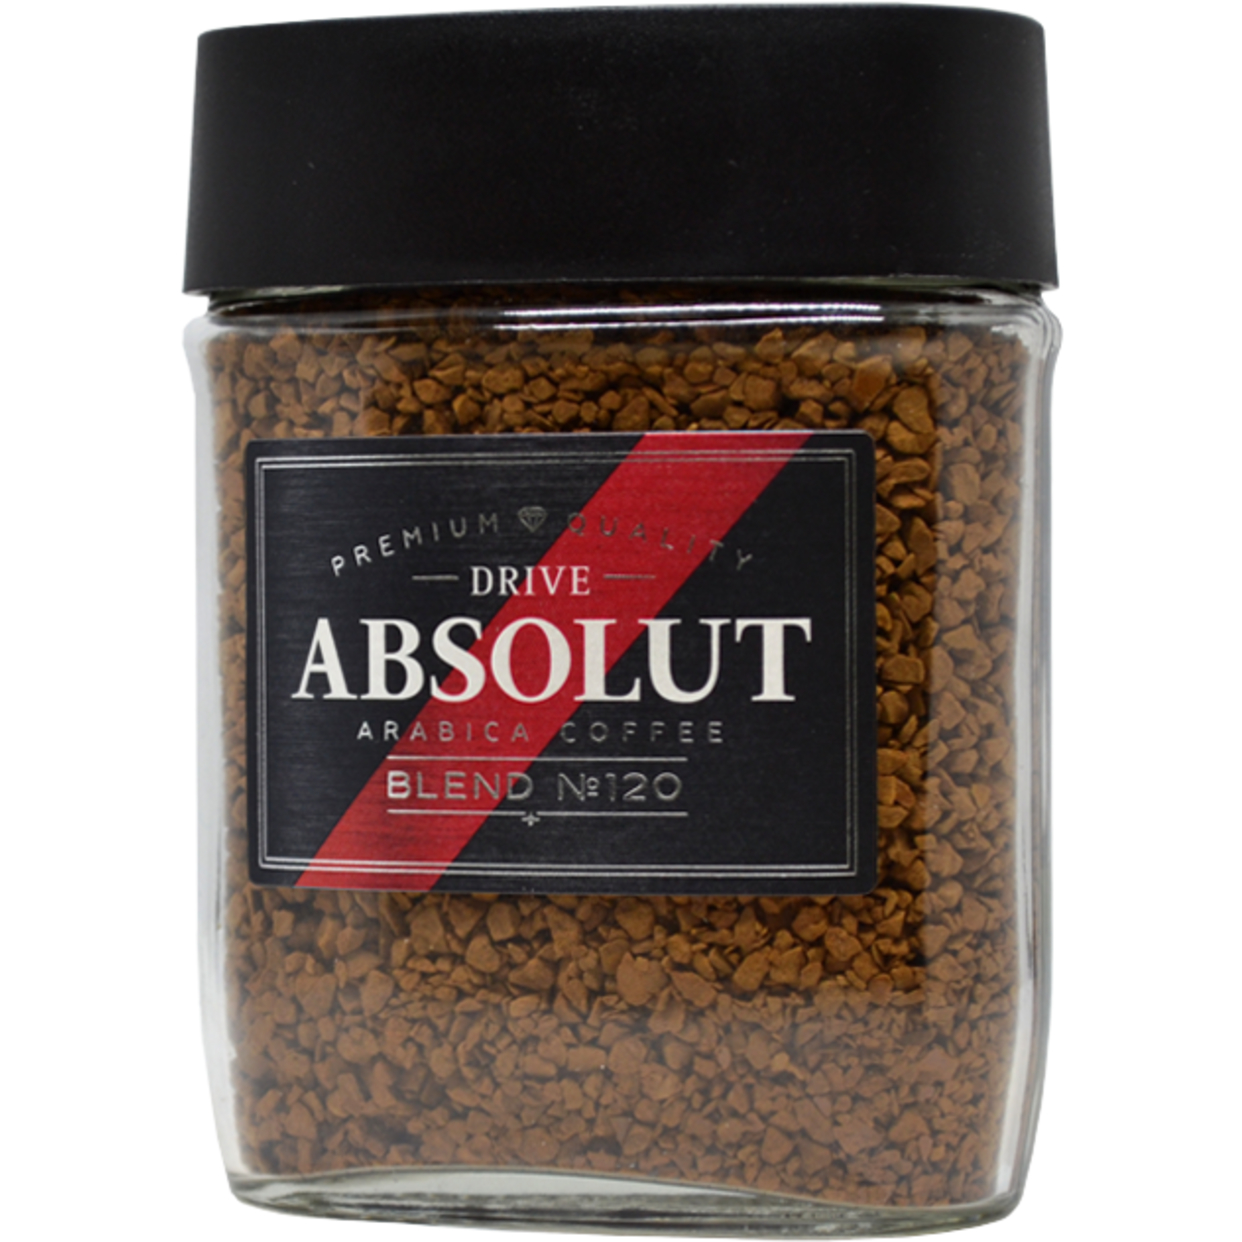 Кофе растворимый сублимированный Absolut Drive: blend №120, ст/б 95 г.